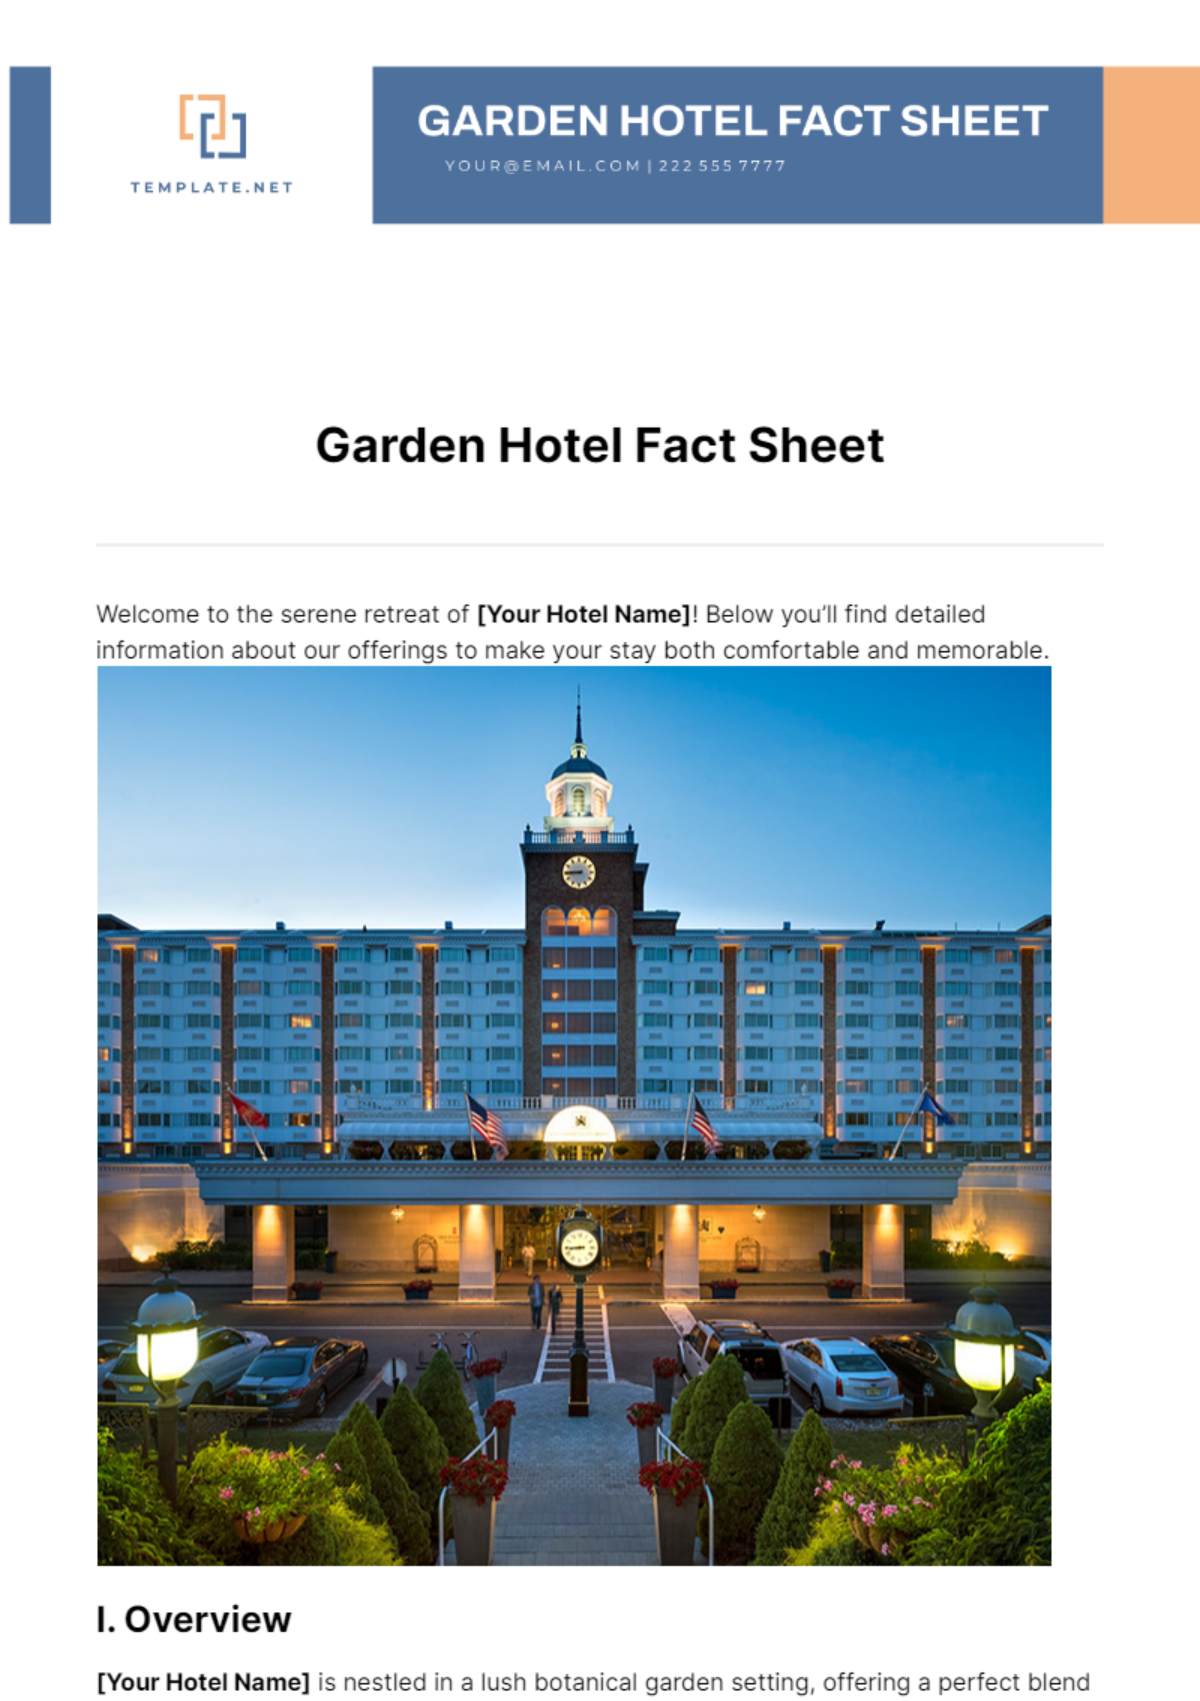 Garden Hotel Fact Sheet Template